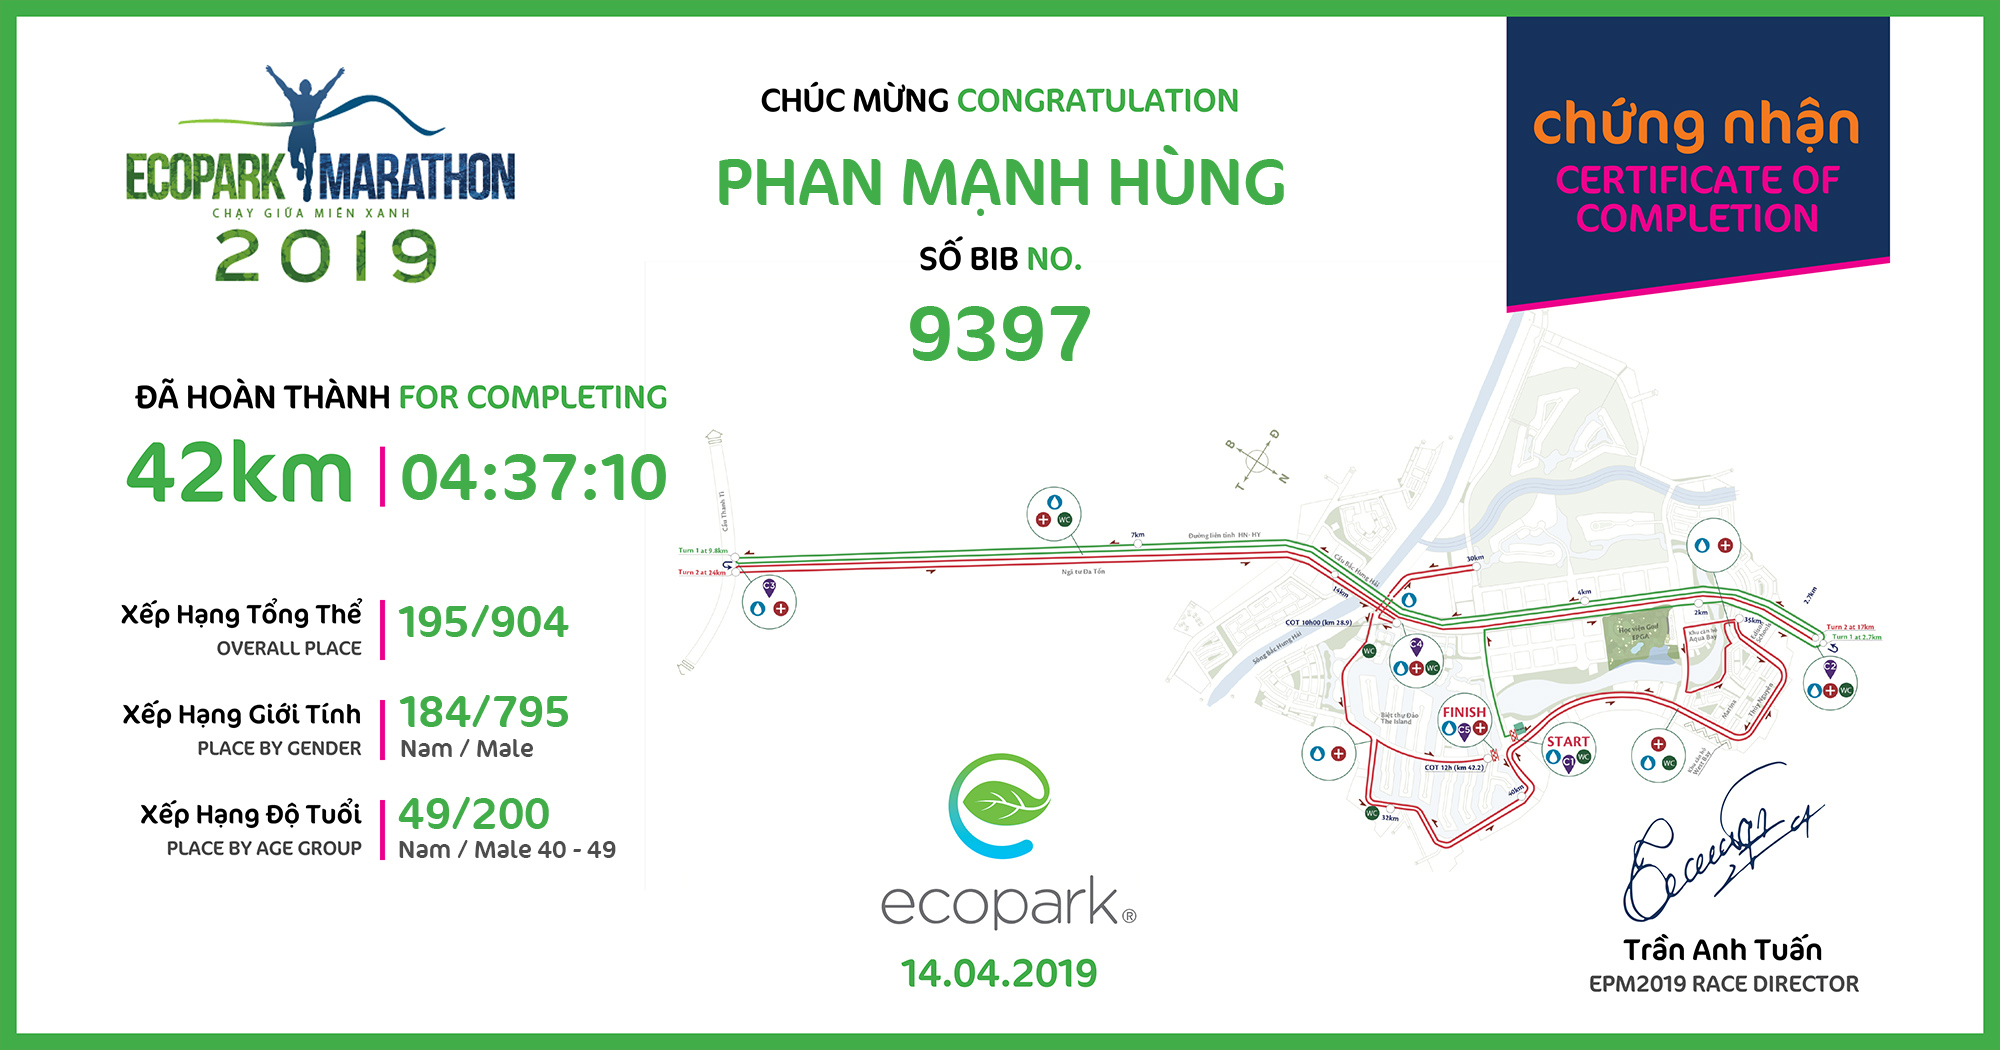 9397 - Phan Mạnh Hùng